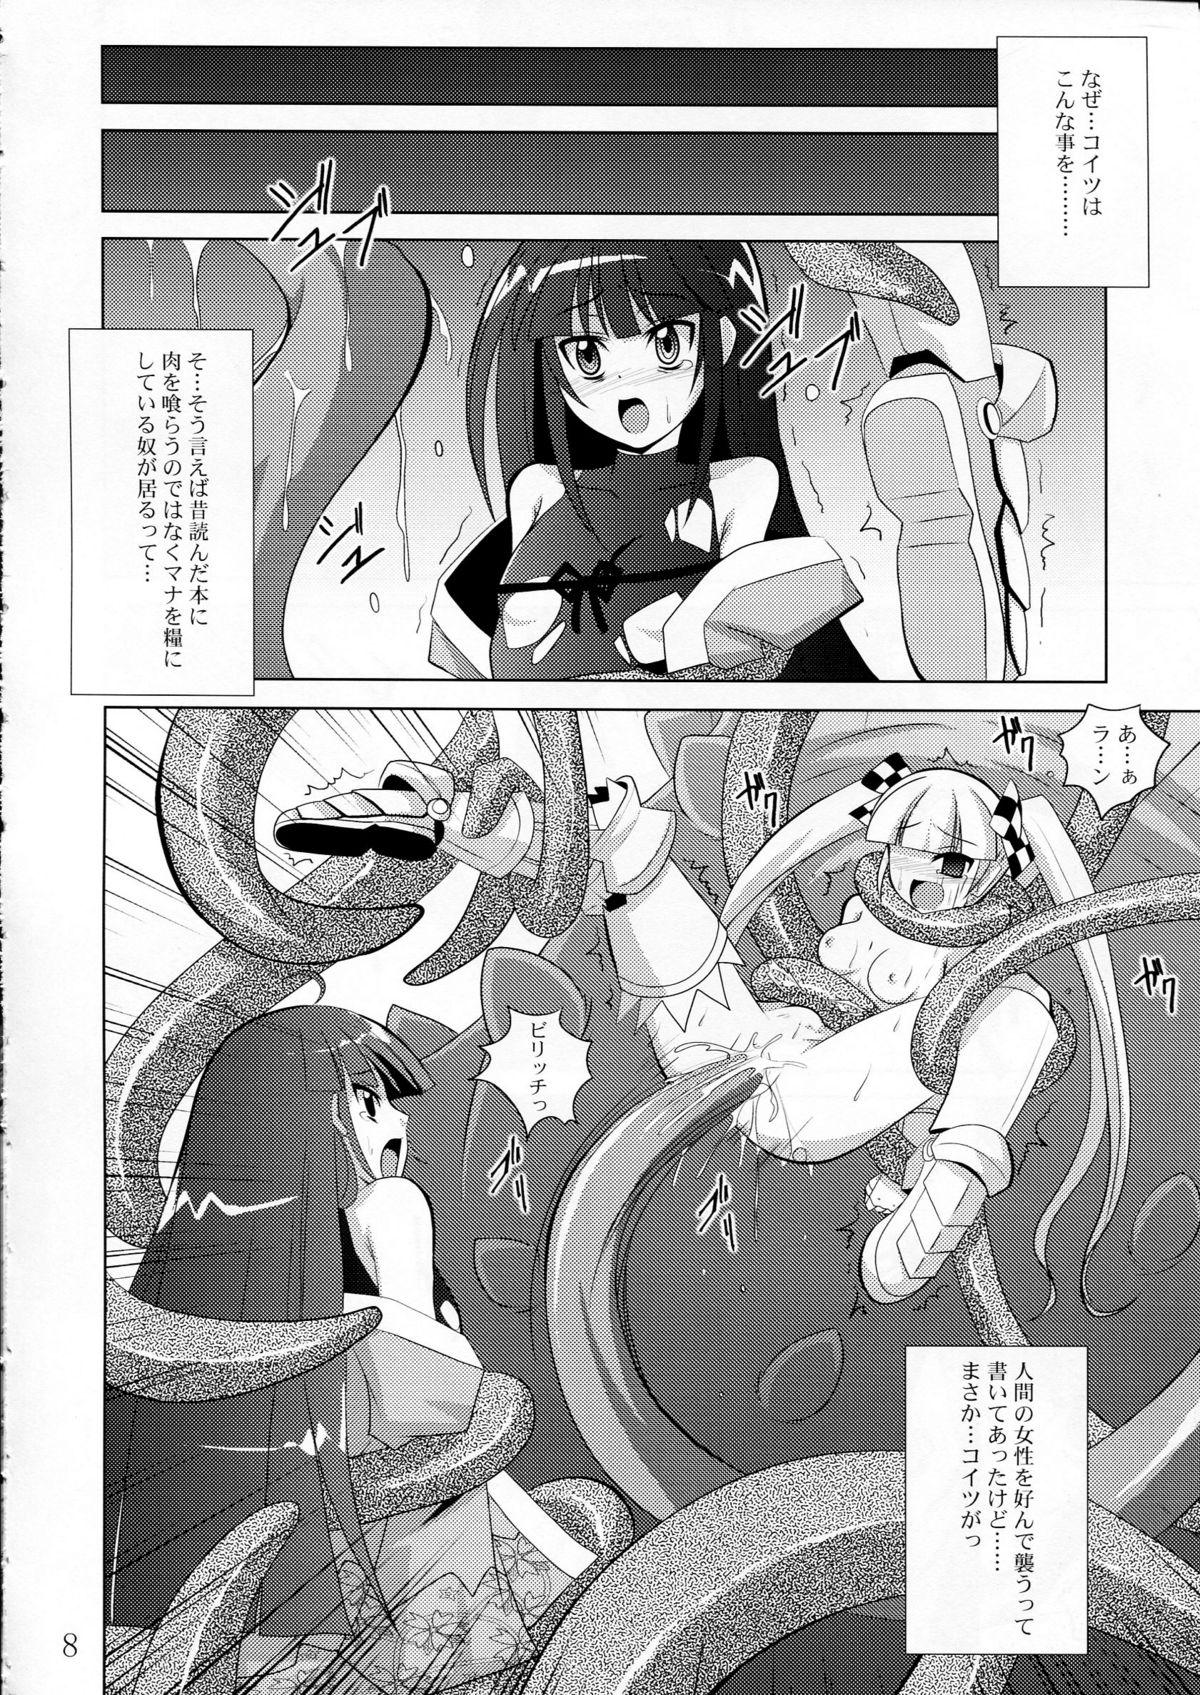 Kashima physical - 7th dragon Pene - Page 7